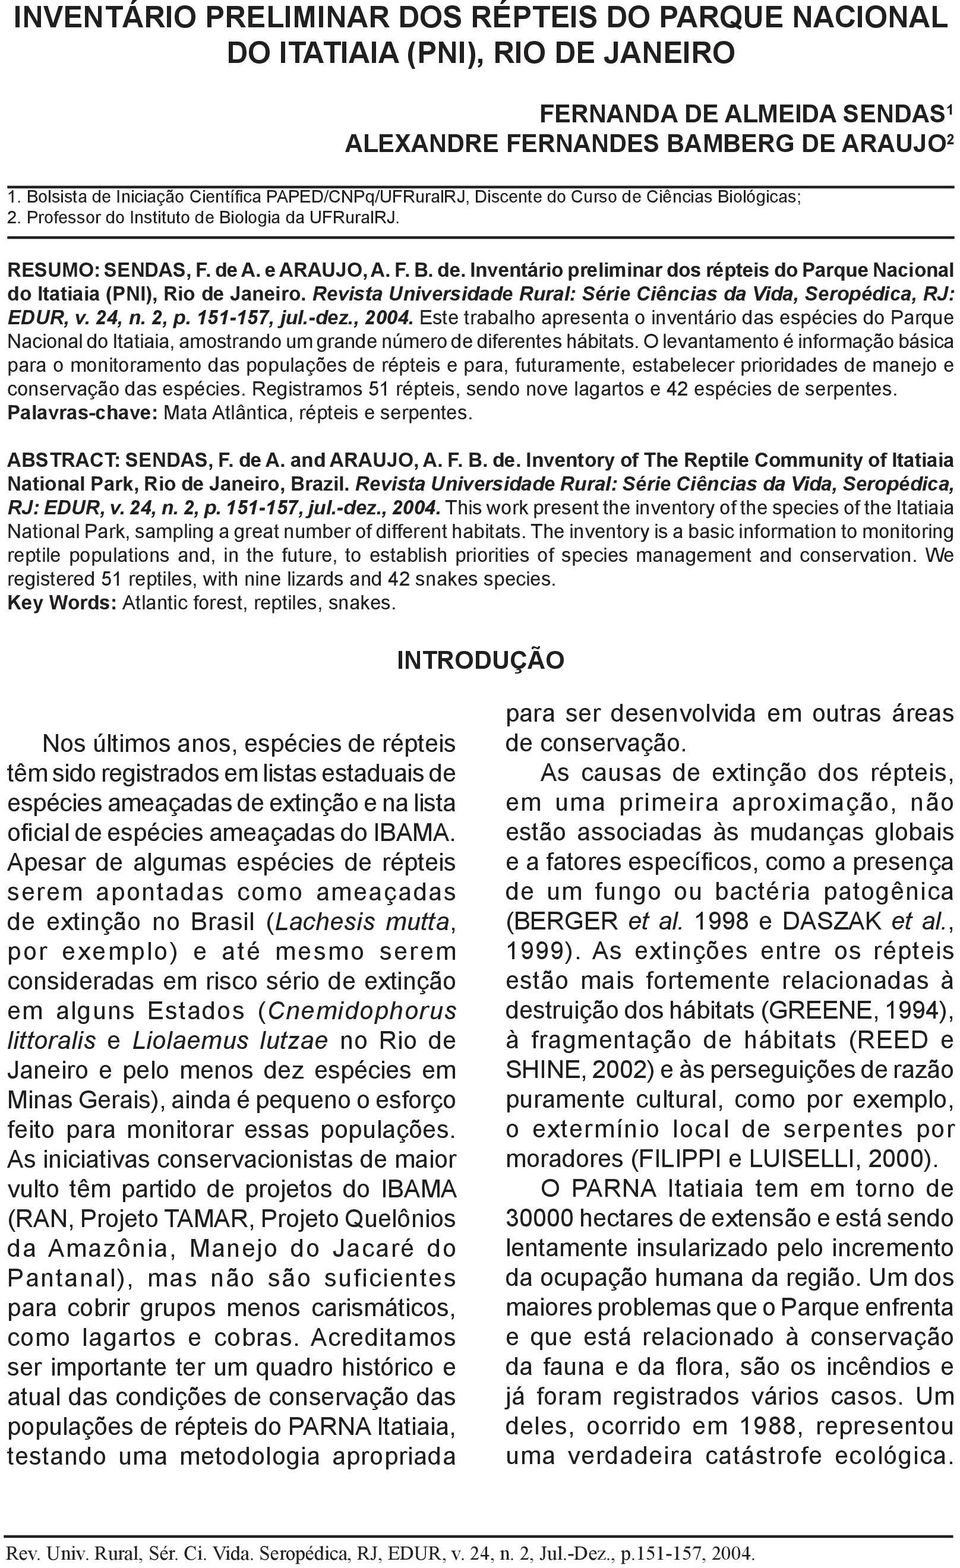 Revista Universidade Rural: Série Ciências da Vida, Seropédica, RJ: EDUR, v. 24, n. 2, p. 151-157, jul.-dez., 2004.